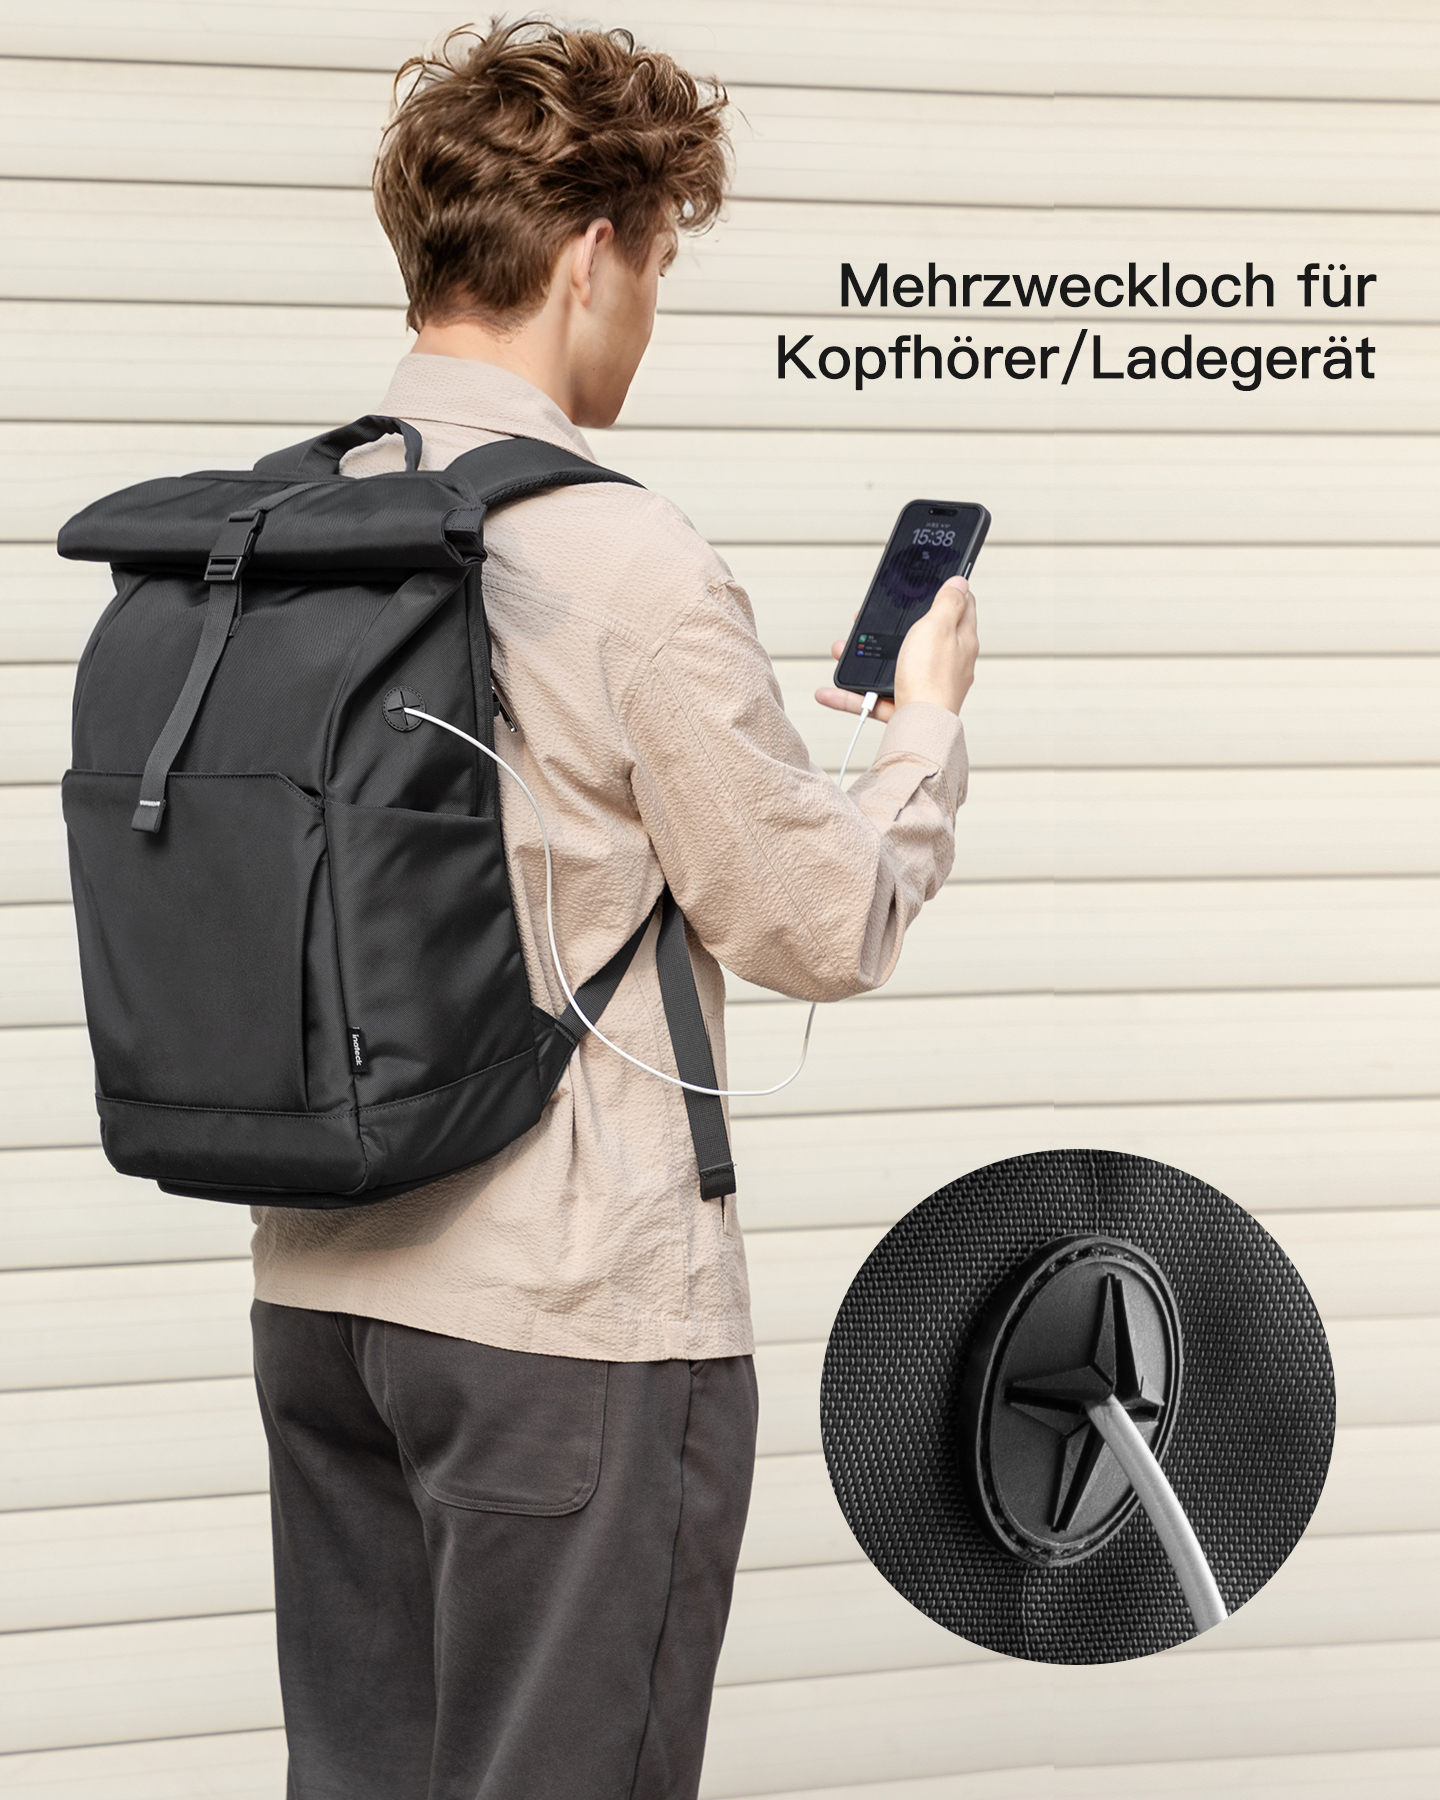 INATECK 30L Rucksack Uni/Pendeln/Freizeit/Arbeit/Sport/Reisen Schuhfach BP01007_black für separatem black, Unisex, mit